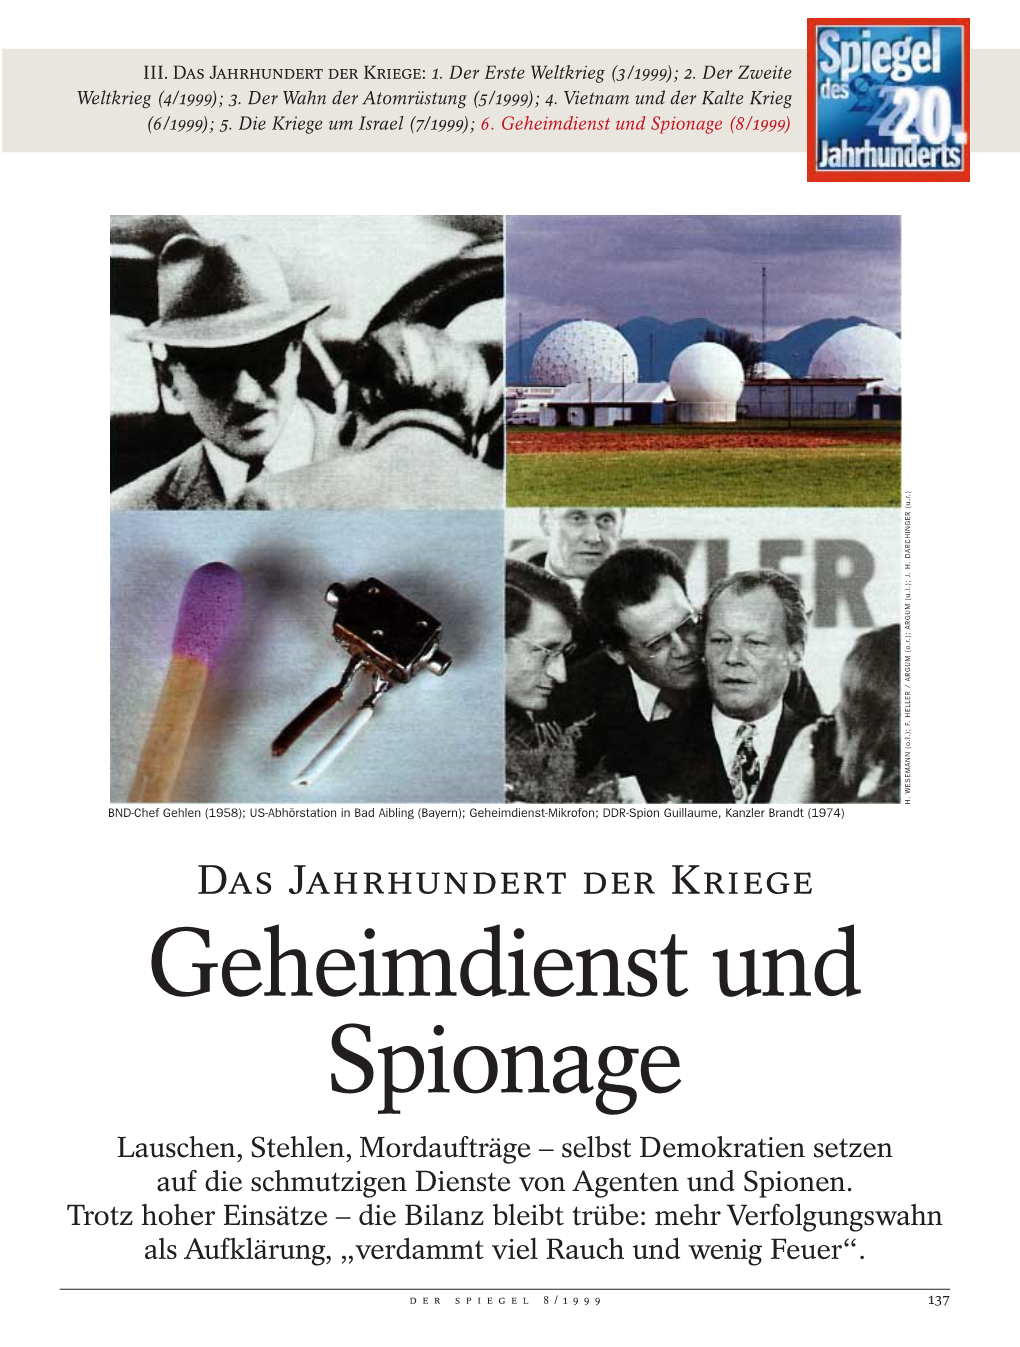 Geheimdienst Und Spionage (8/1999) H